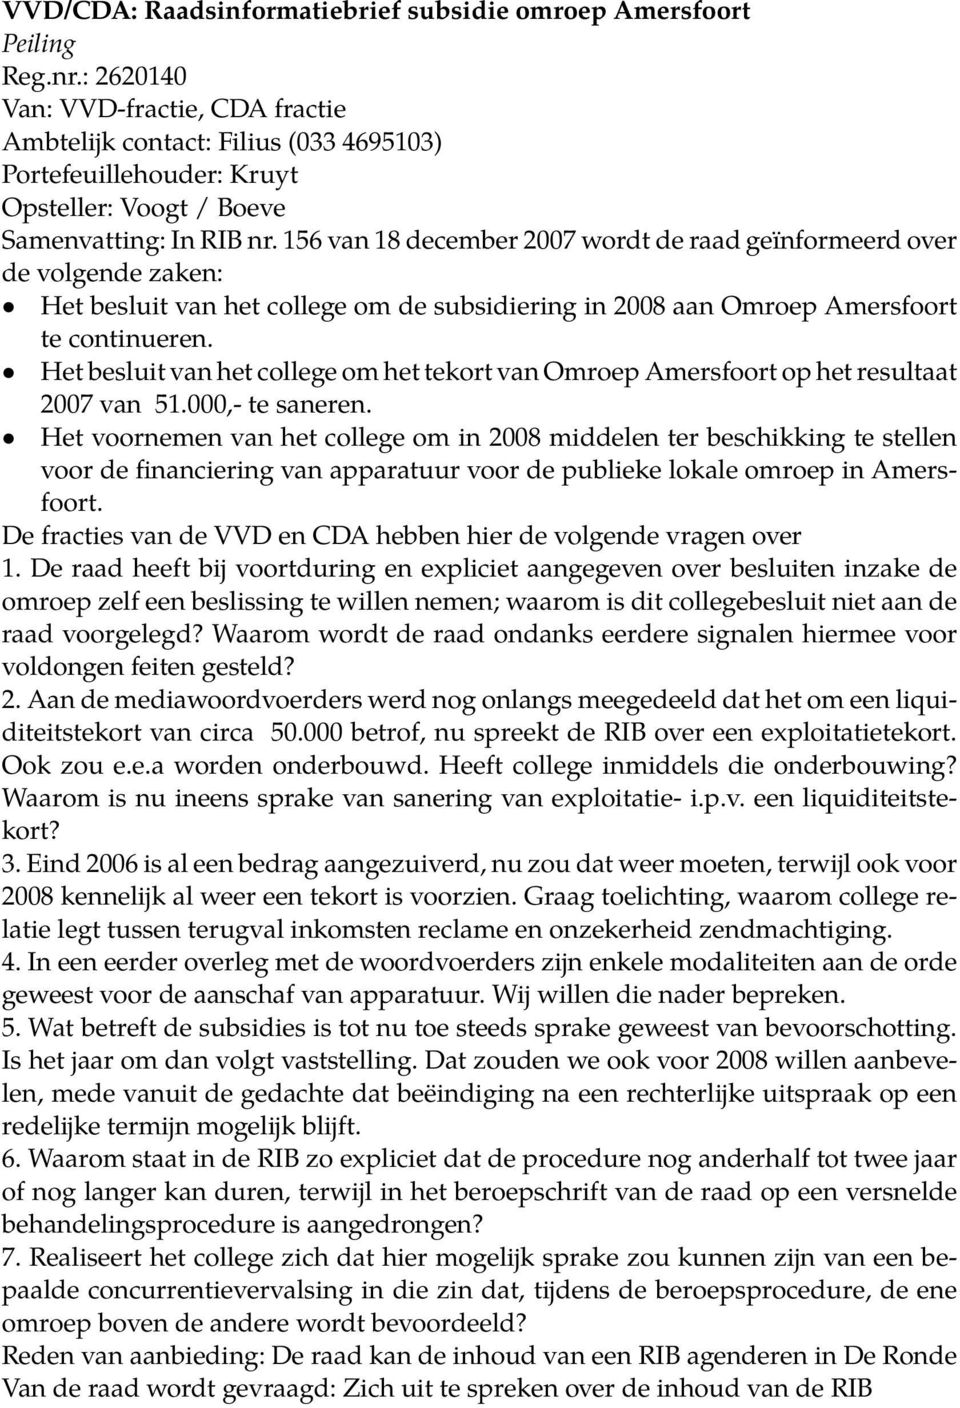 156 van 18 december 2007 wordt de raad geïnformeerd over de volgende zaken: Het besluit van het college om de subsidiering in 2008 aan Omroep Amersfoort te continueren.